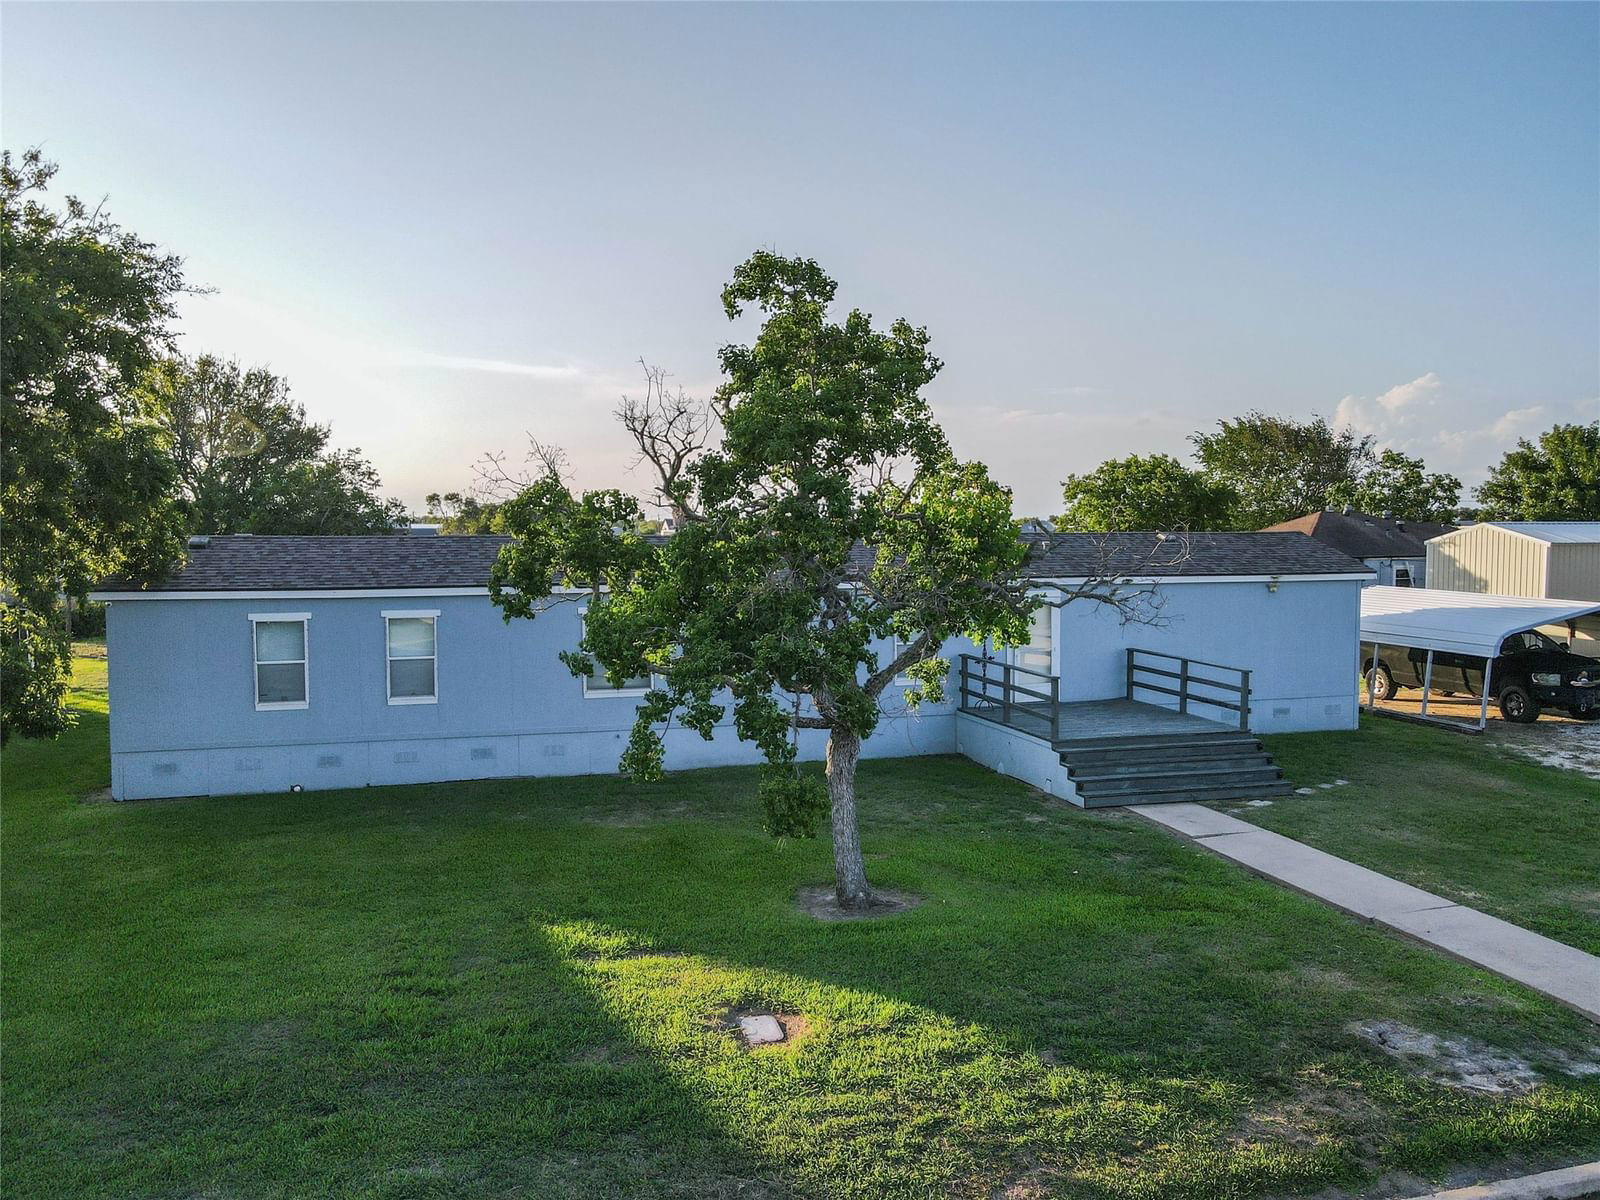 Real estate property located at 958 Wightman, Matagorda, Matagorda, Matagorda, TX, US